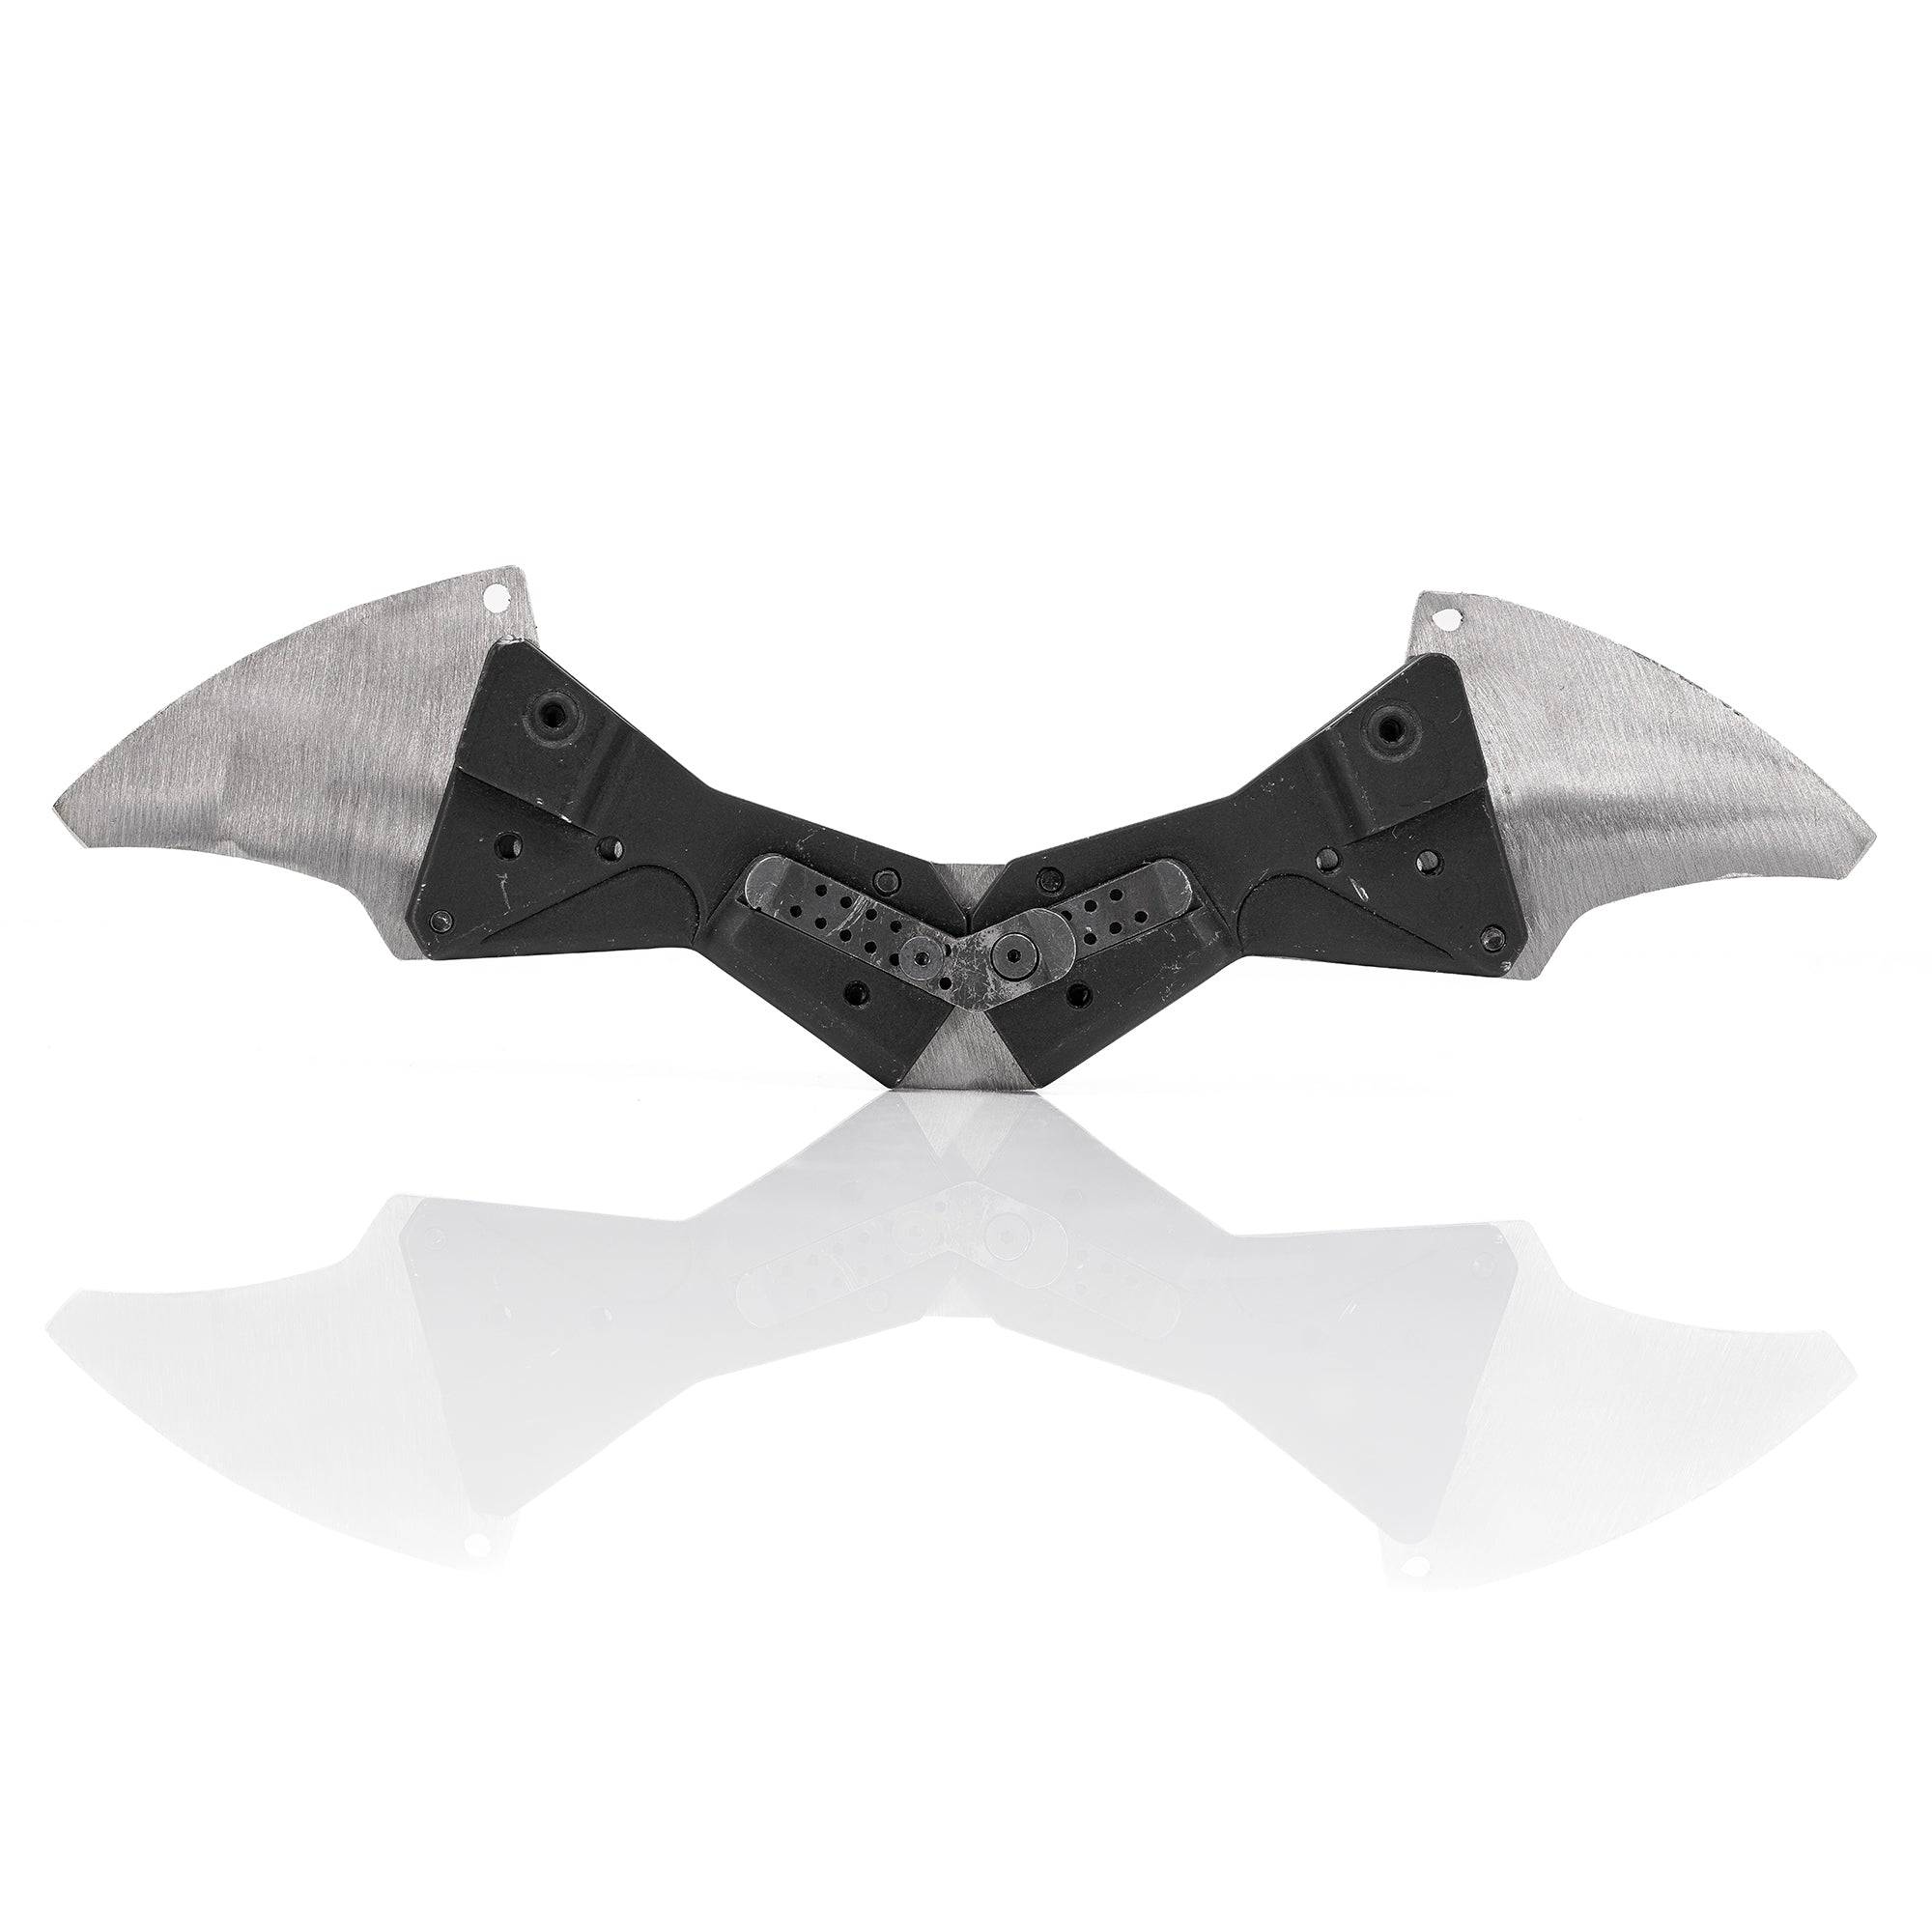 Batarang Prototypes - Hacksmith.store